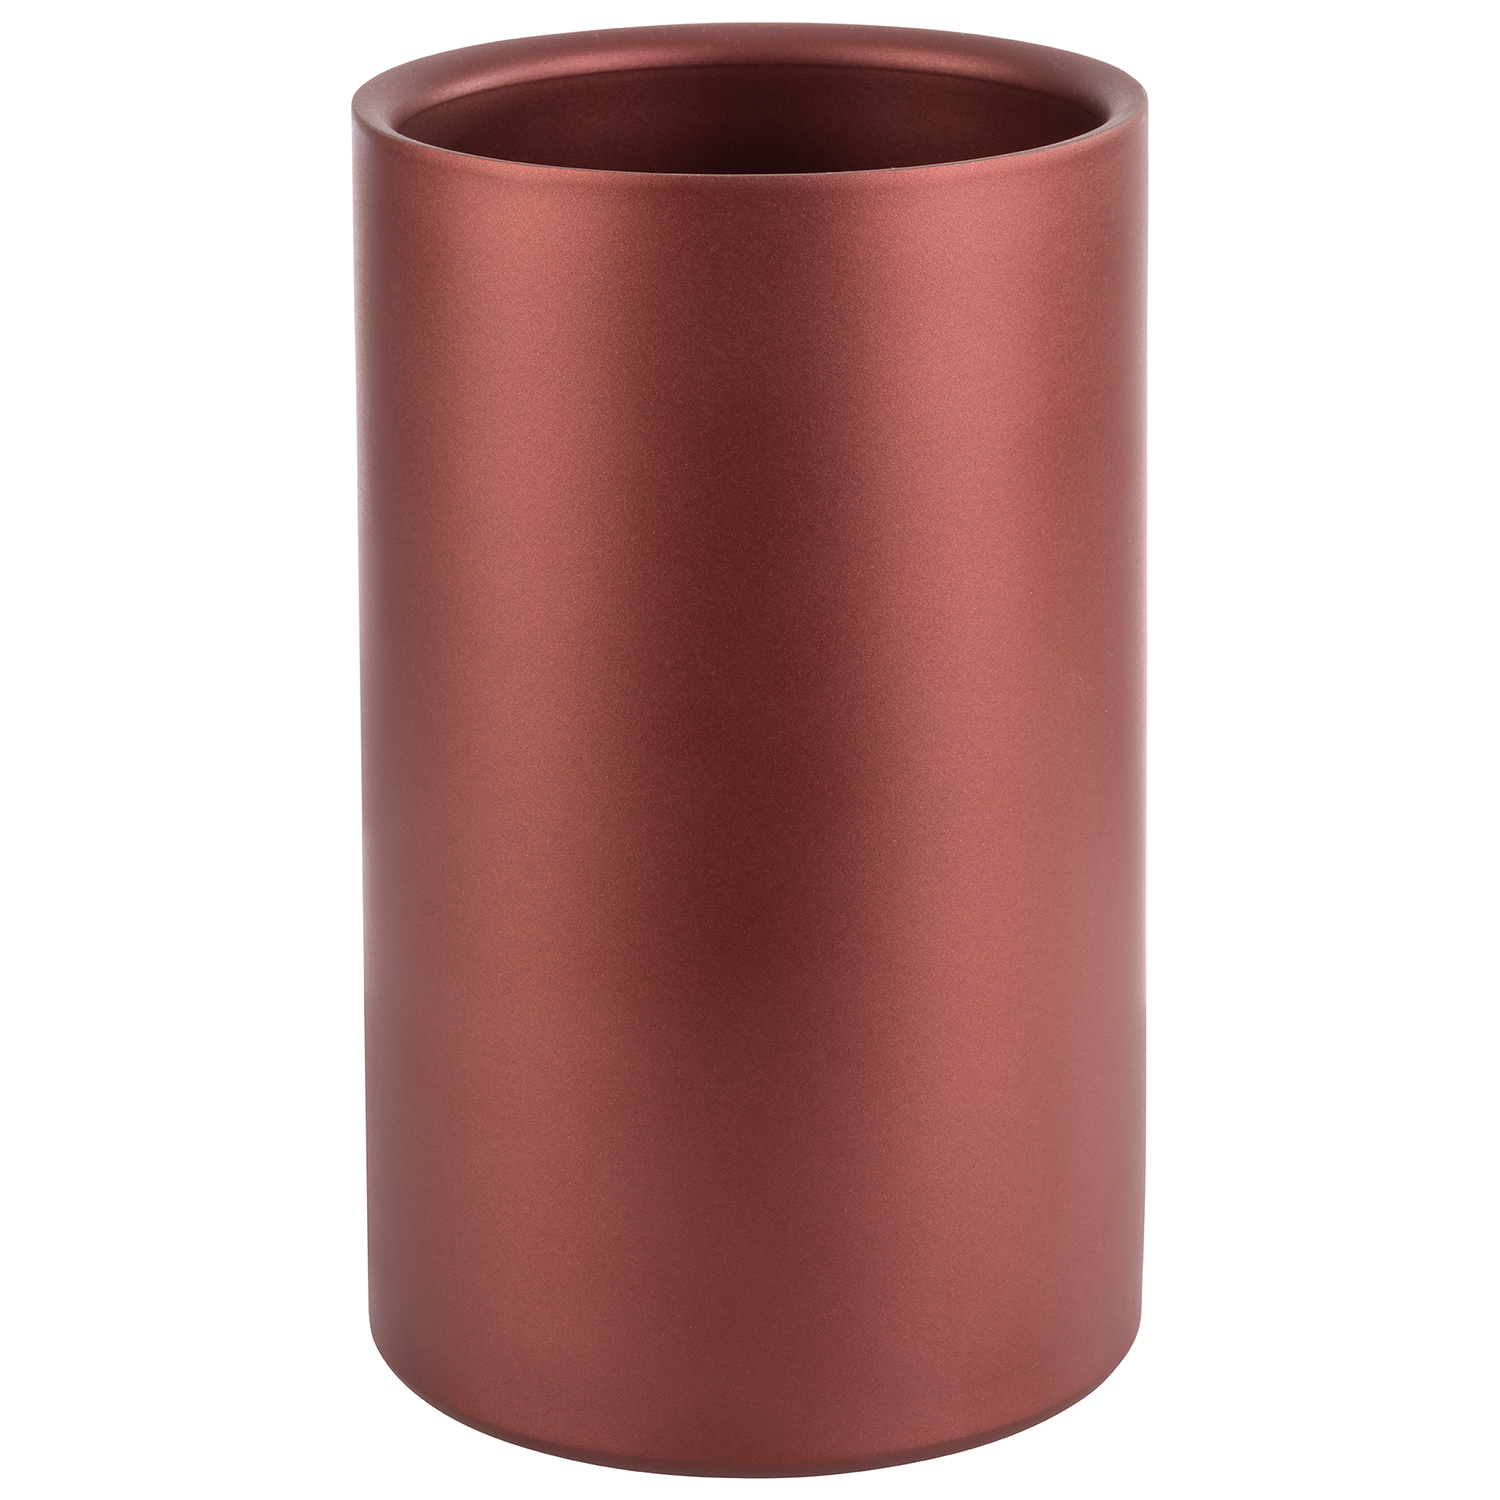 Flaschenkühler außen Ø12cm H20cm copper red